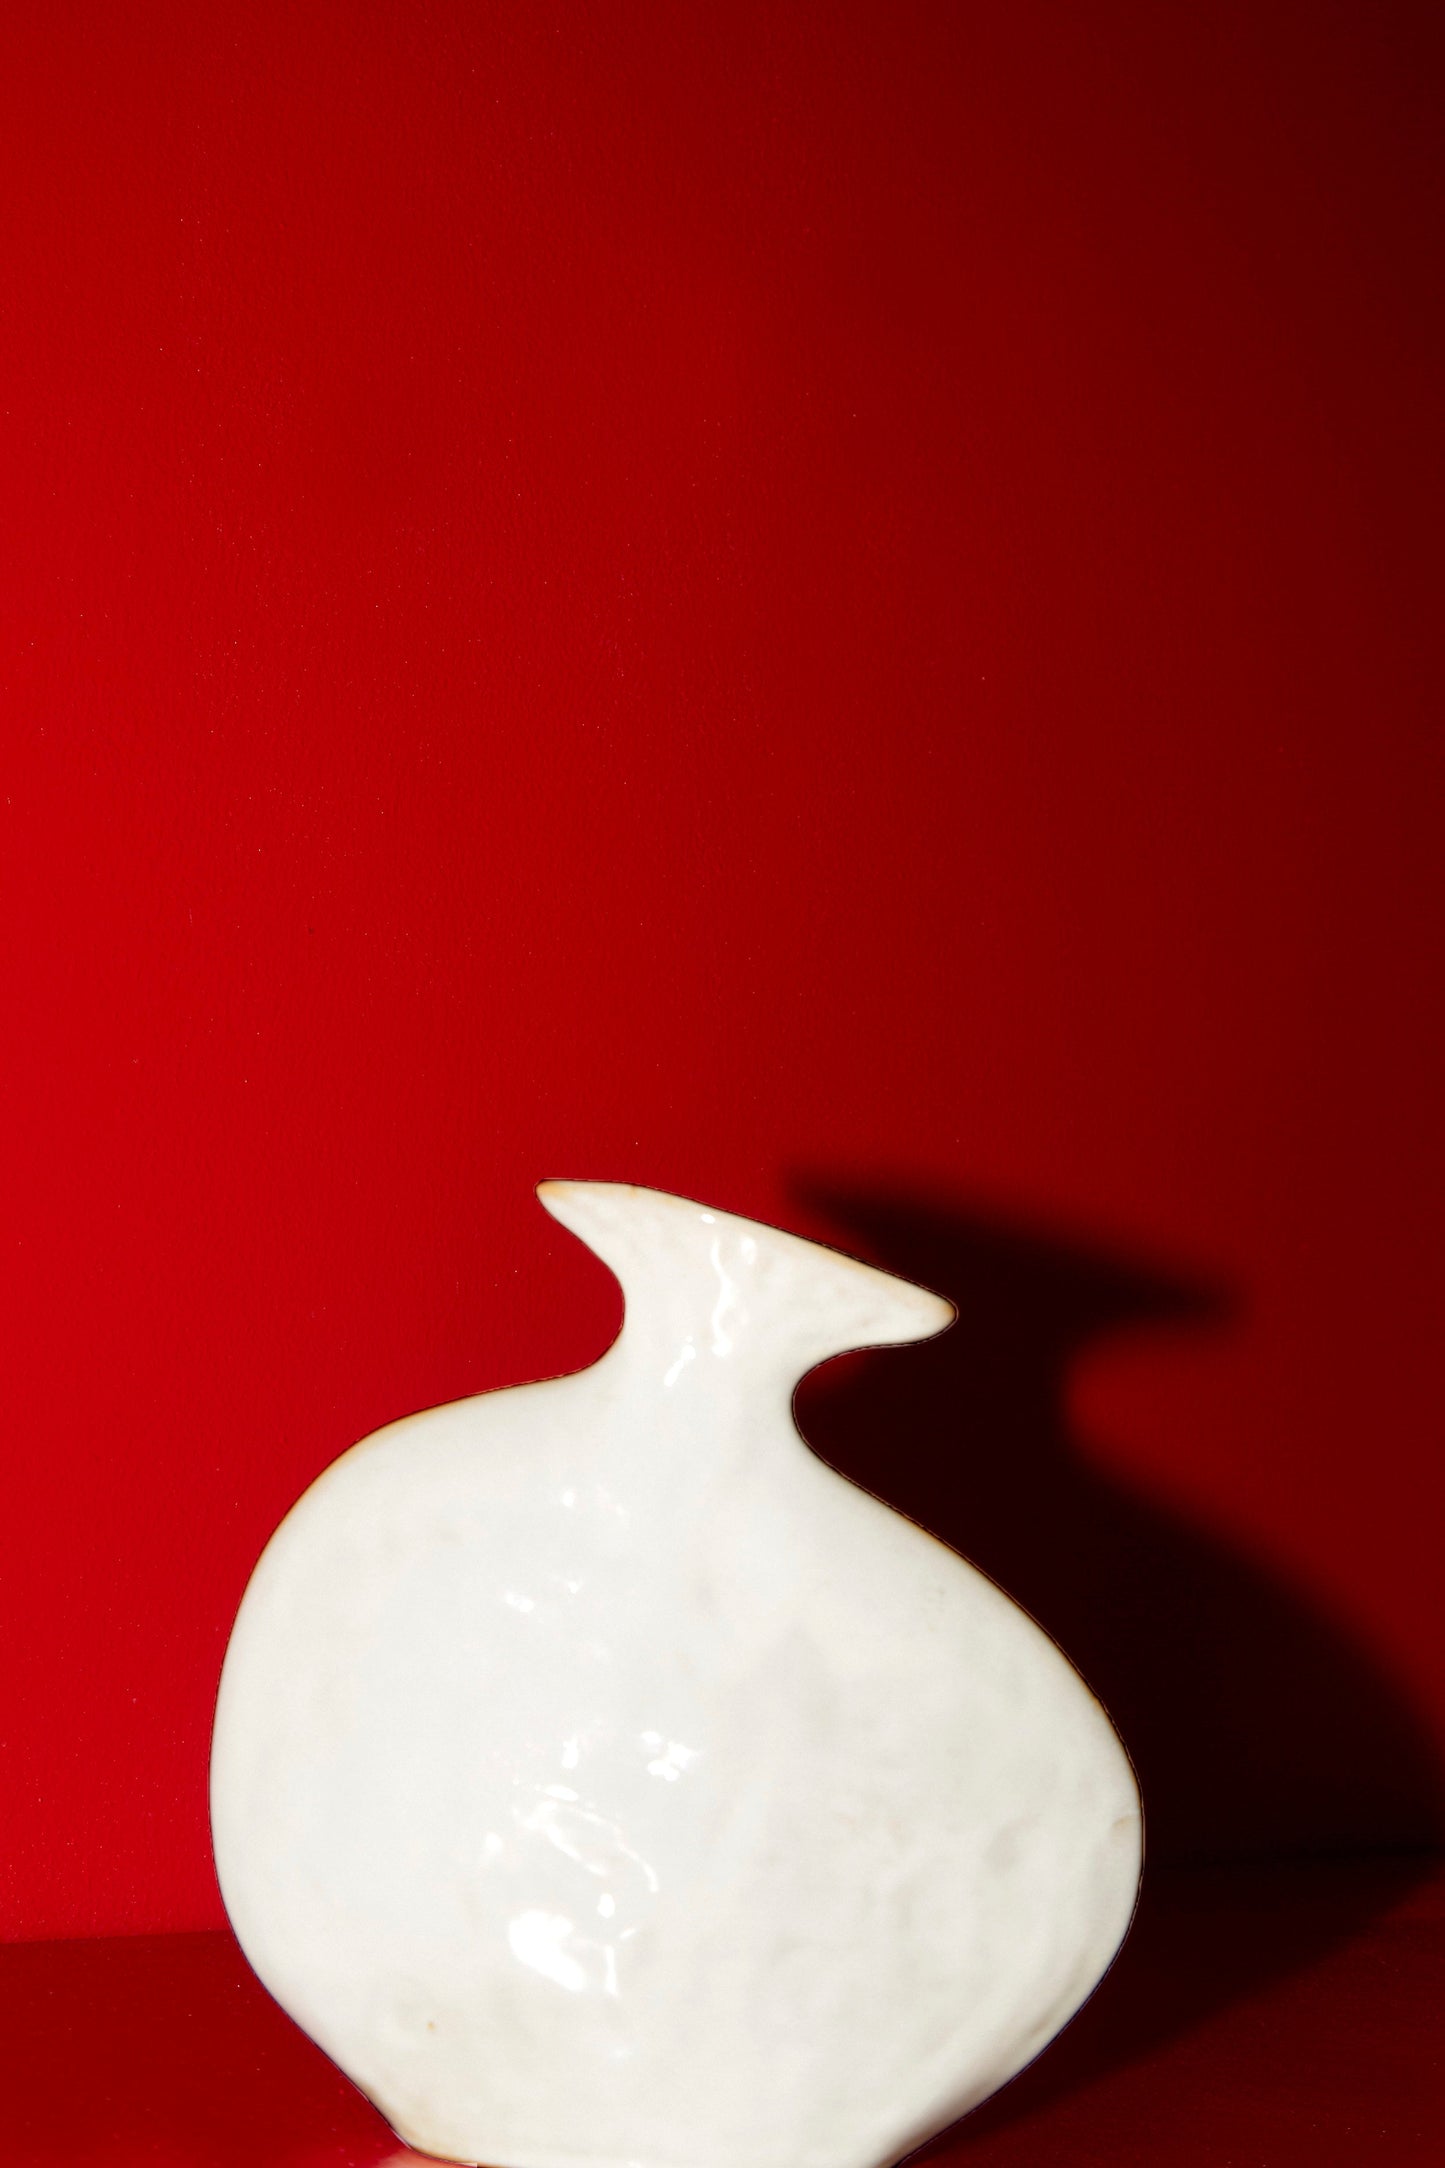 Flat Vase in Shiny White